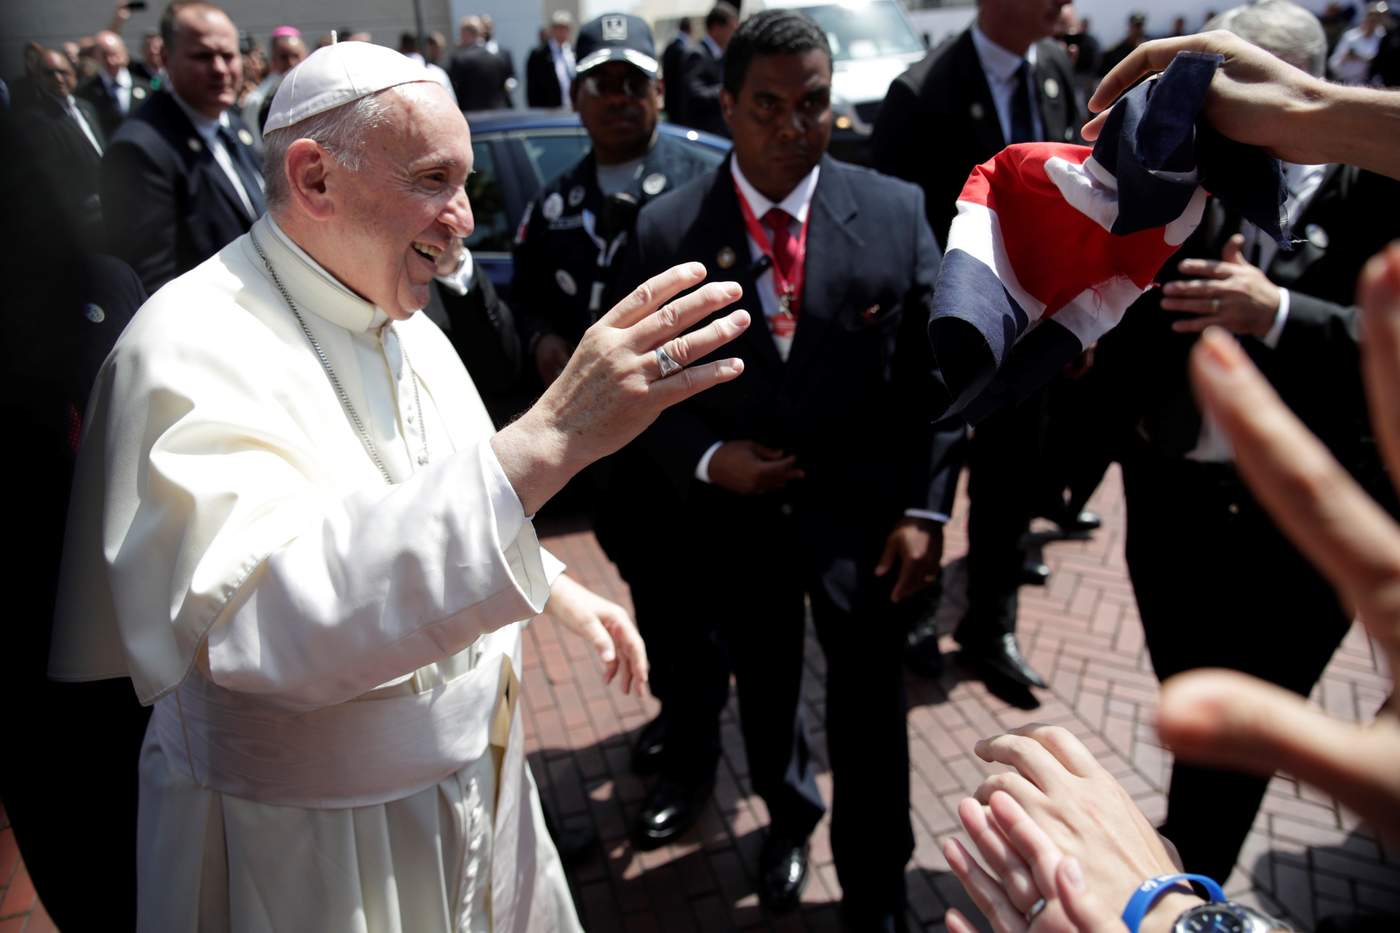 Papa Francisco evita pronunciarse sobre Venezuela